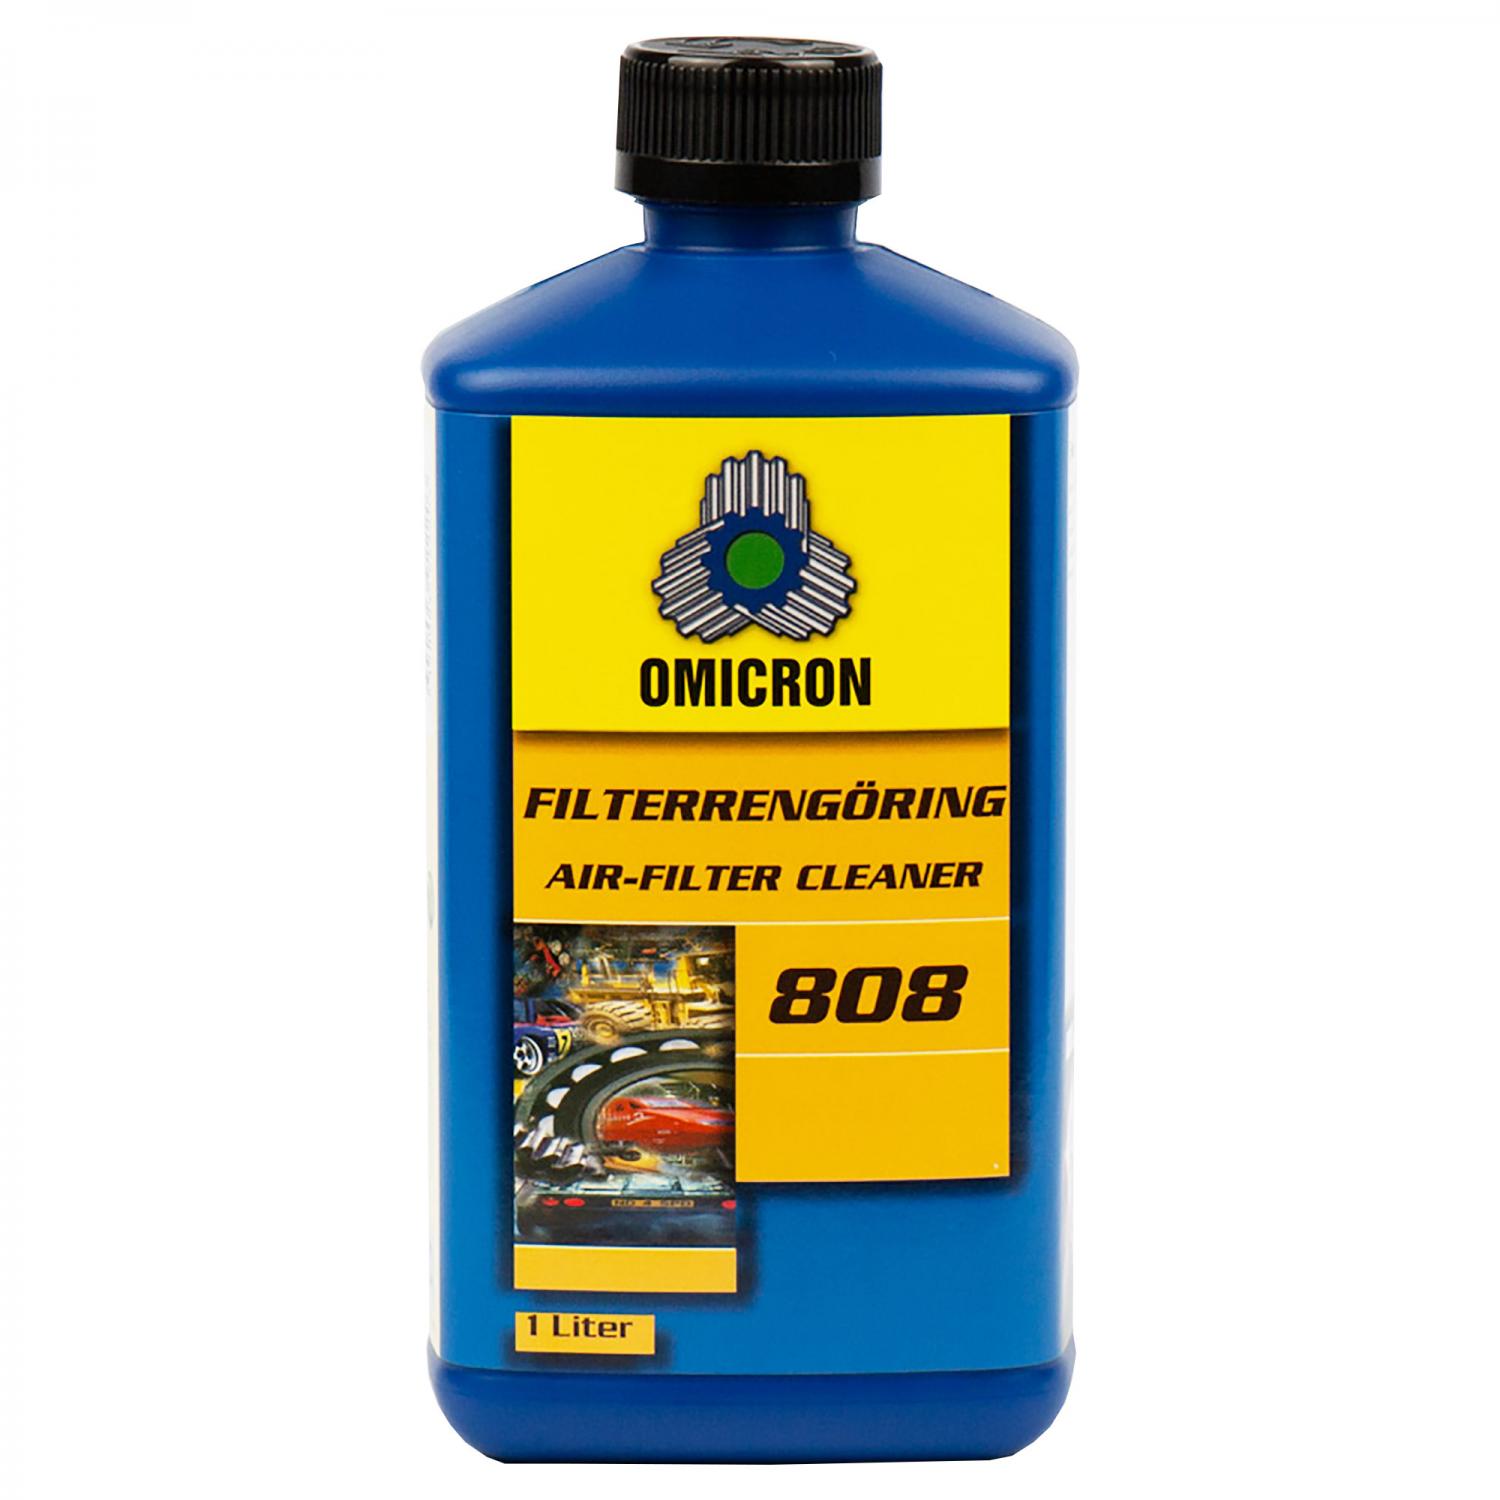 Omicron 808 Filterrengöring 1Liter